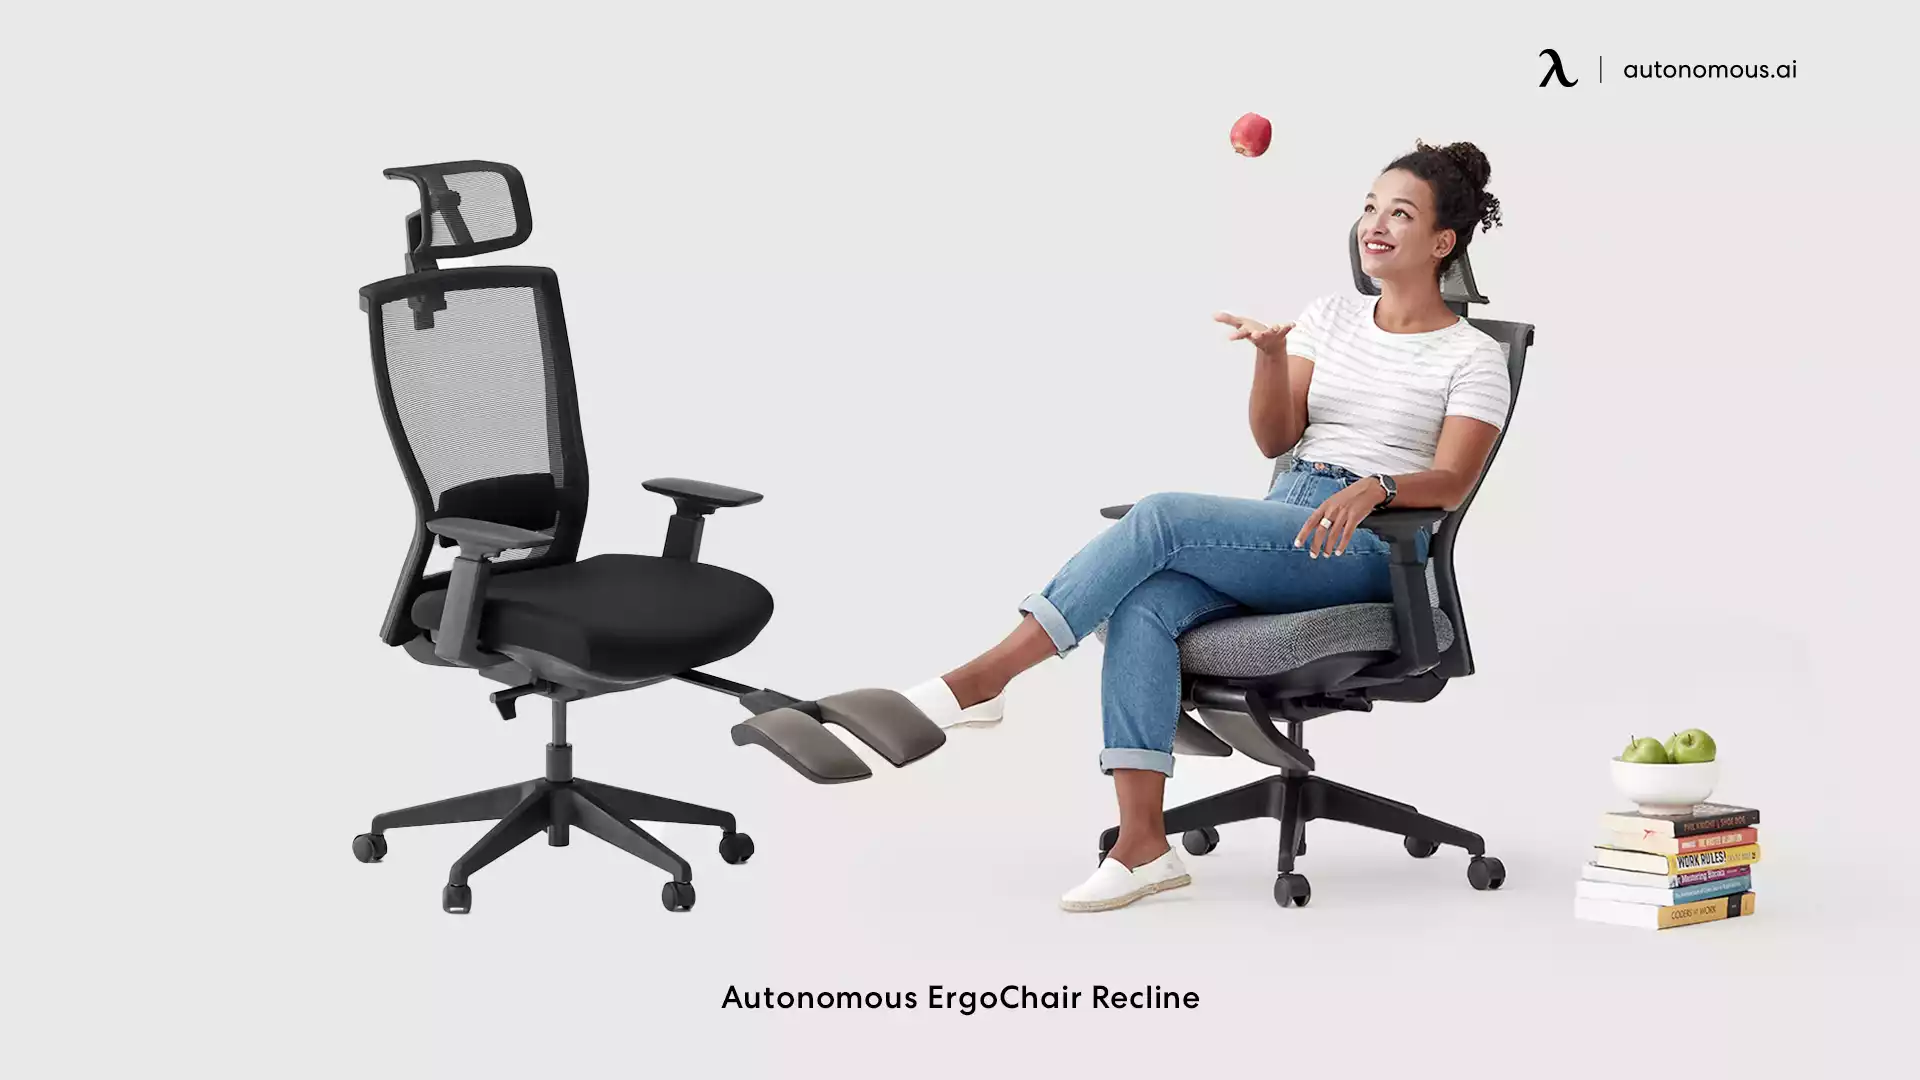 ErgoChair Recline big and tall chair